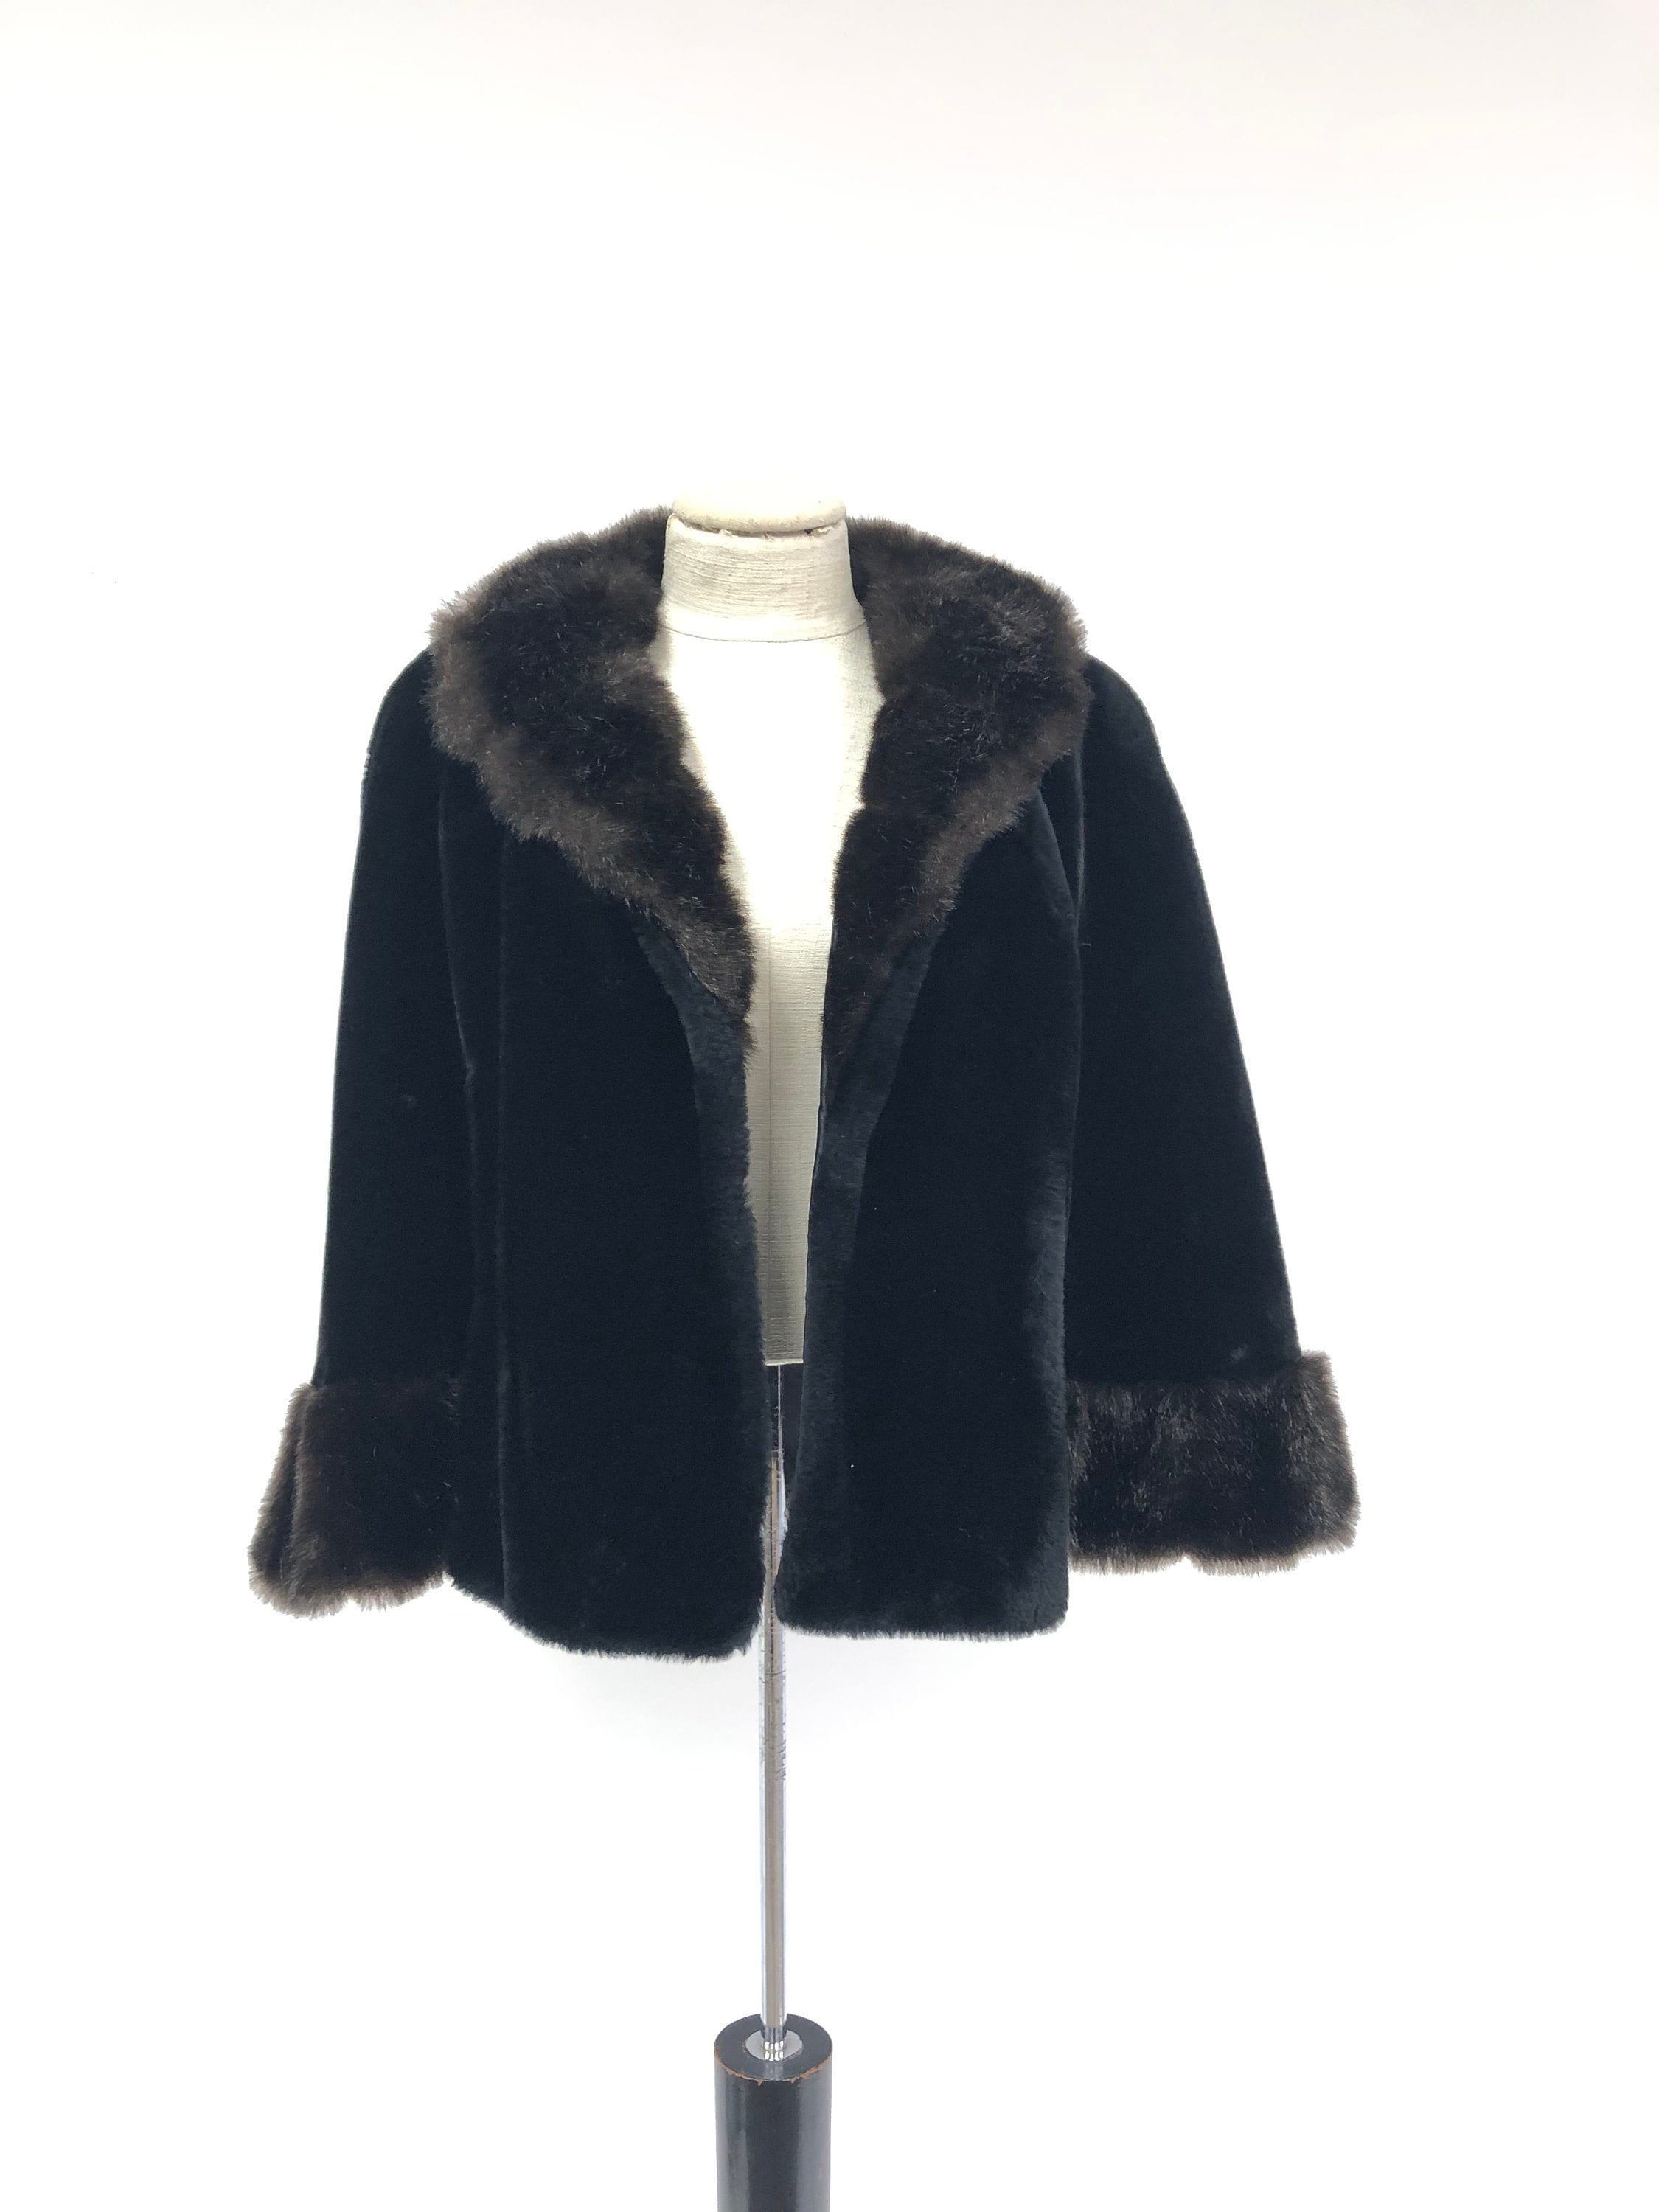 Vintage Faux Fur Cape Coat - Etsy